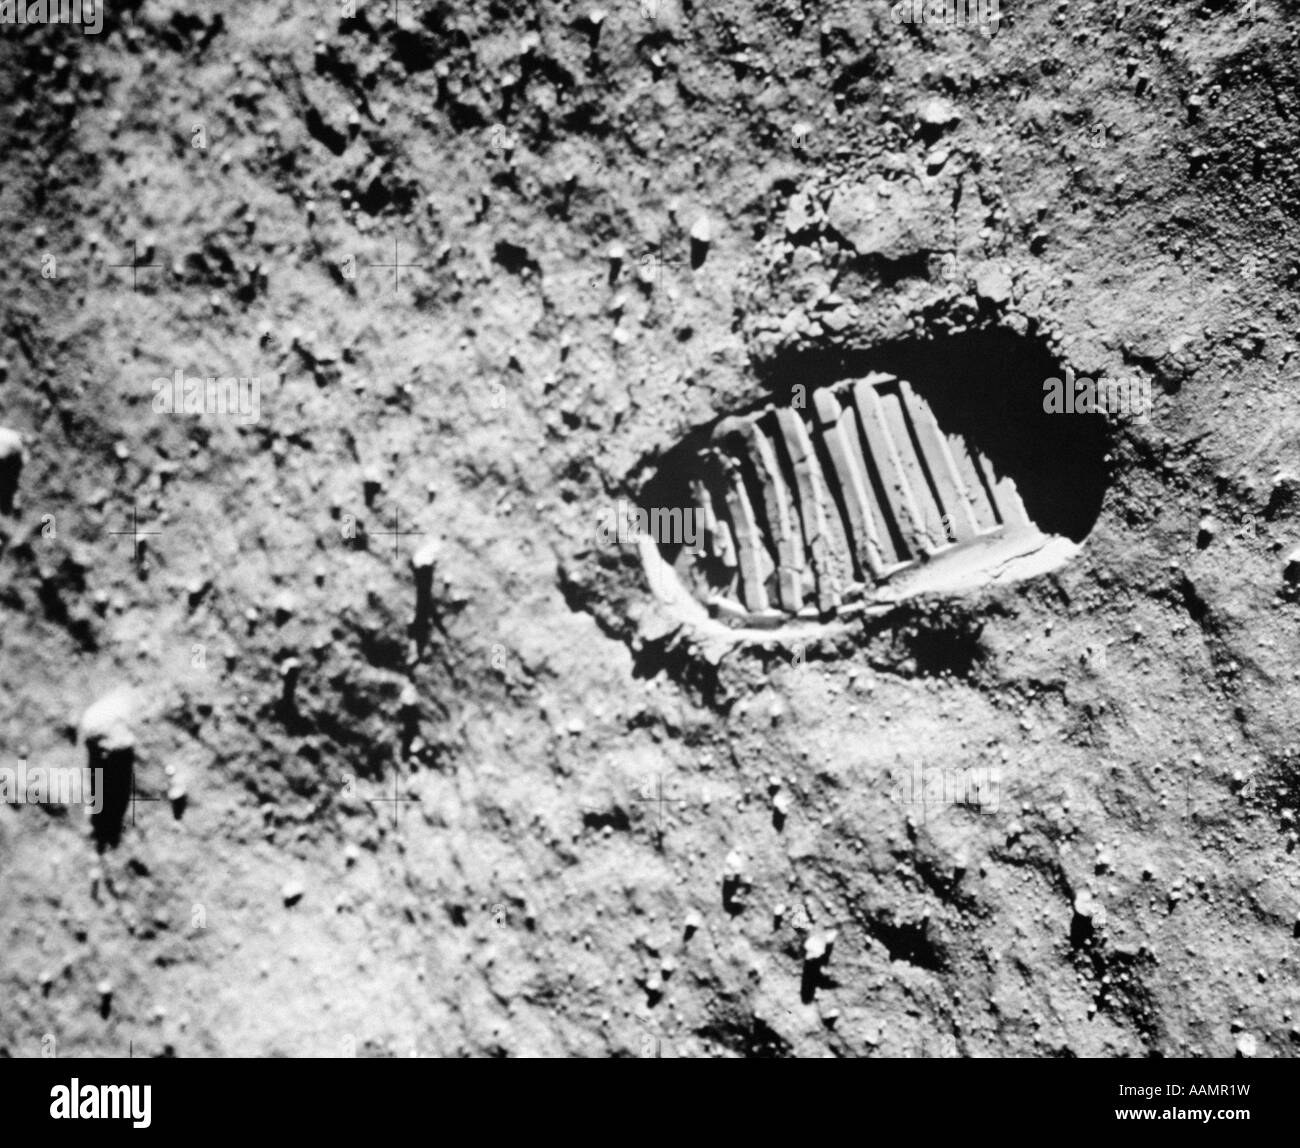 Primer paso en la luna fotografías e imágenes de alta resolución - Alamy